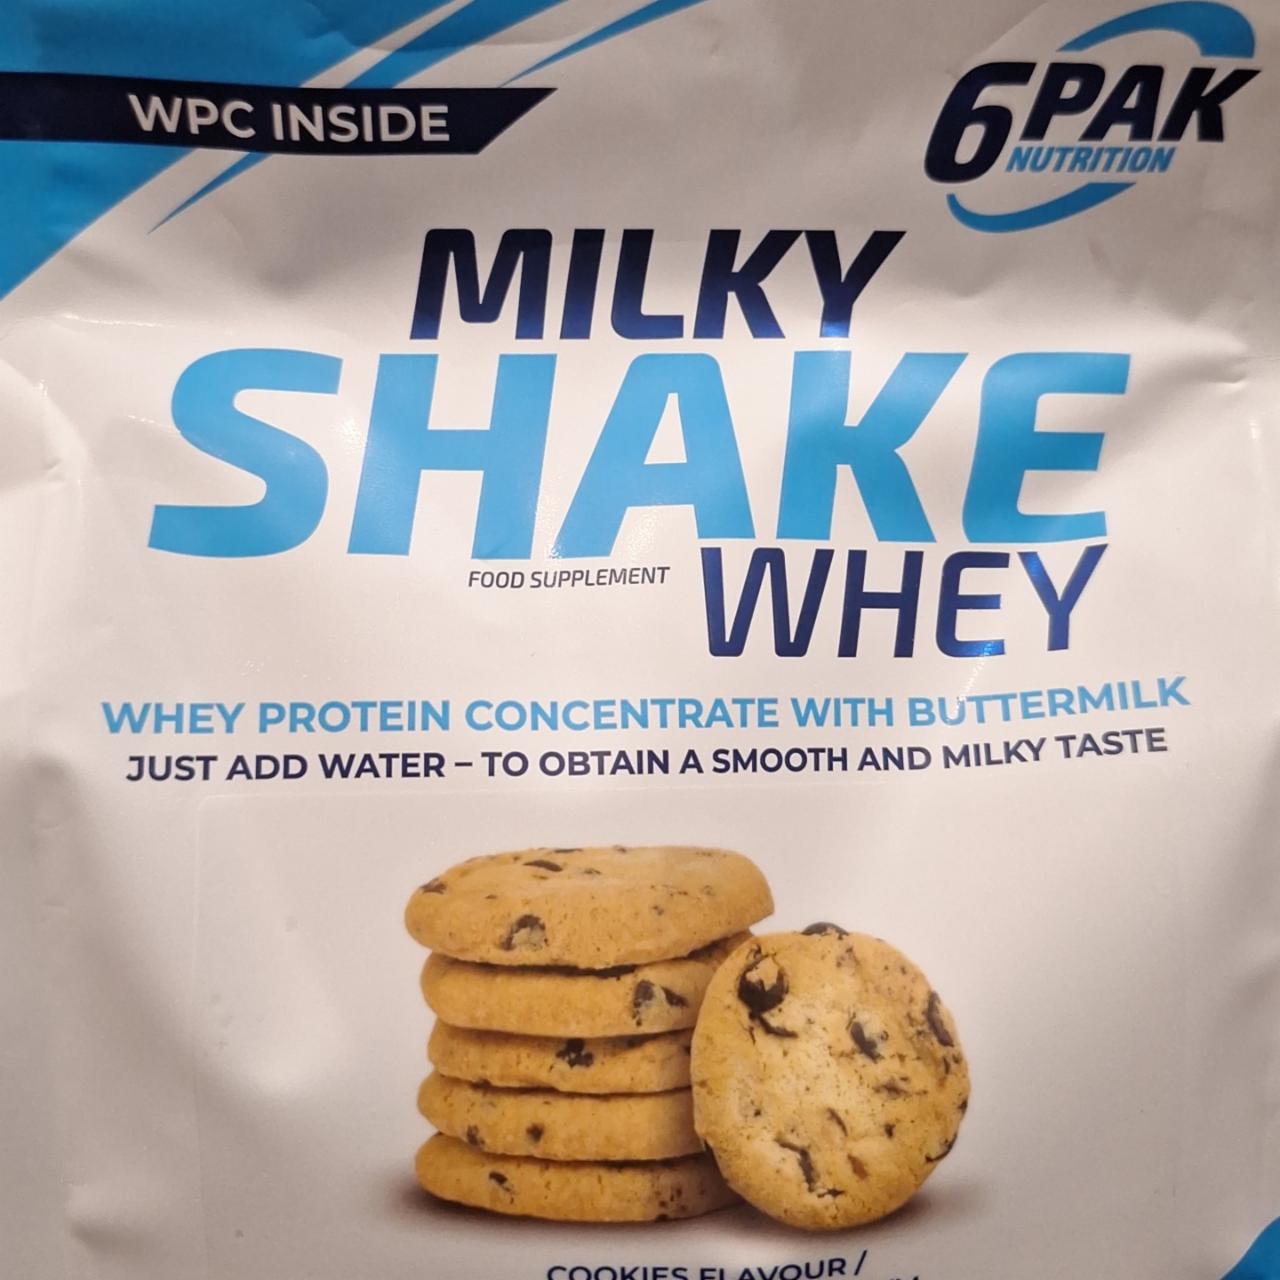 Zdjęcia - Milky Shake whey cookie flavour 6PAK Nutrition